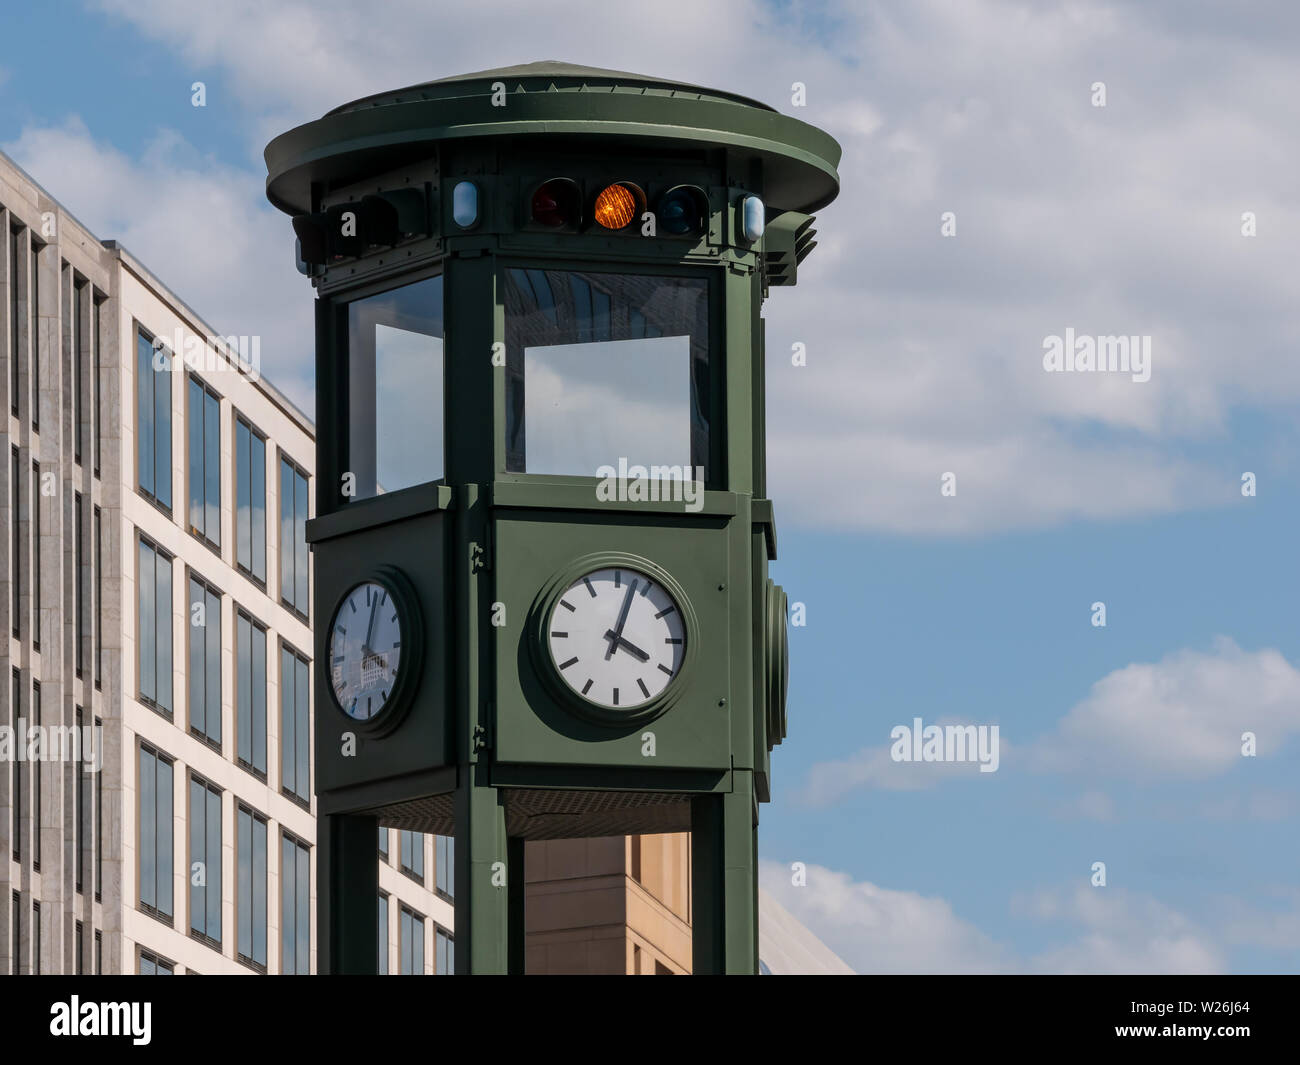 Die berühmte Uhr am Potsdamer Platz in Berlin, Deutschland gegen einen  bewölkten Himmel Stockfotografie - Alamy